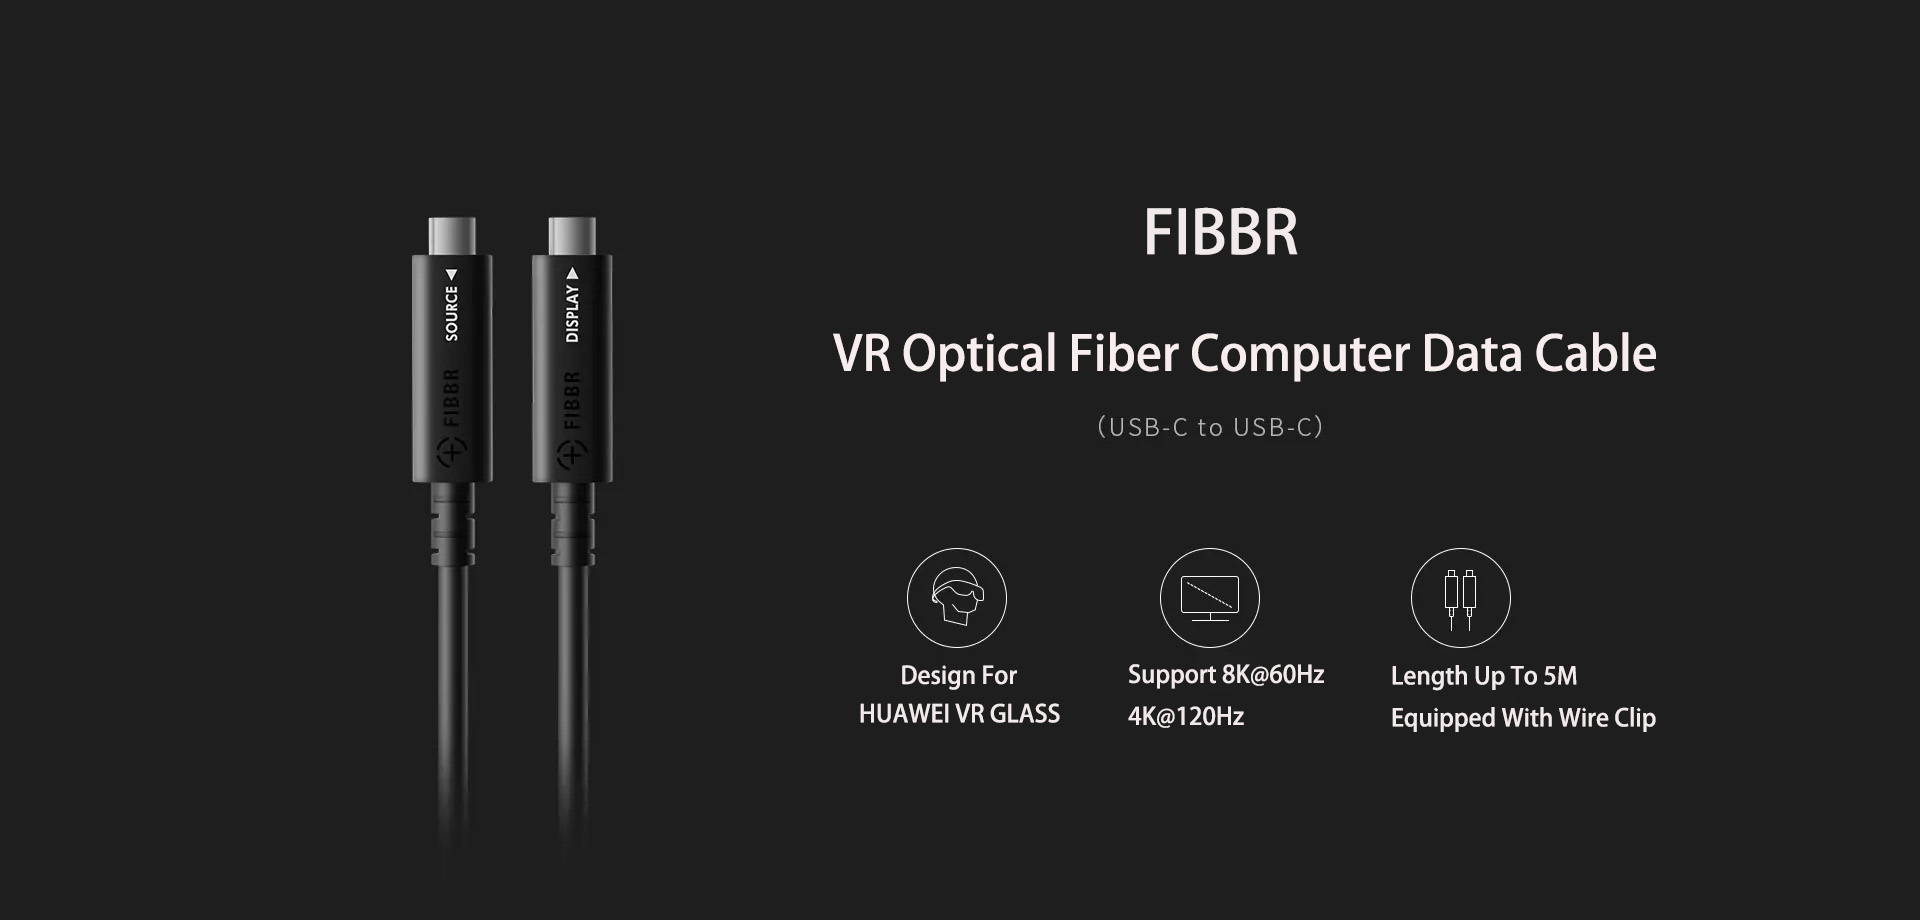 FIBBR USB-C to USB-C VR Optical Fiber Computer Data Cable